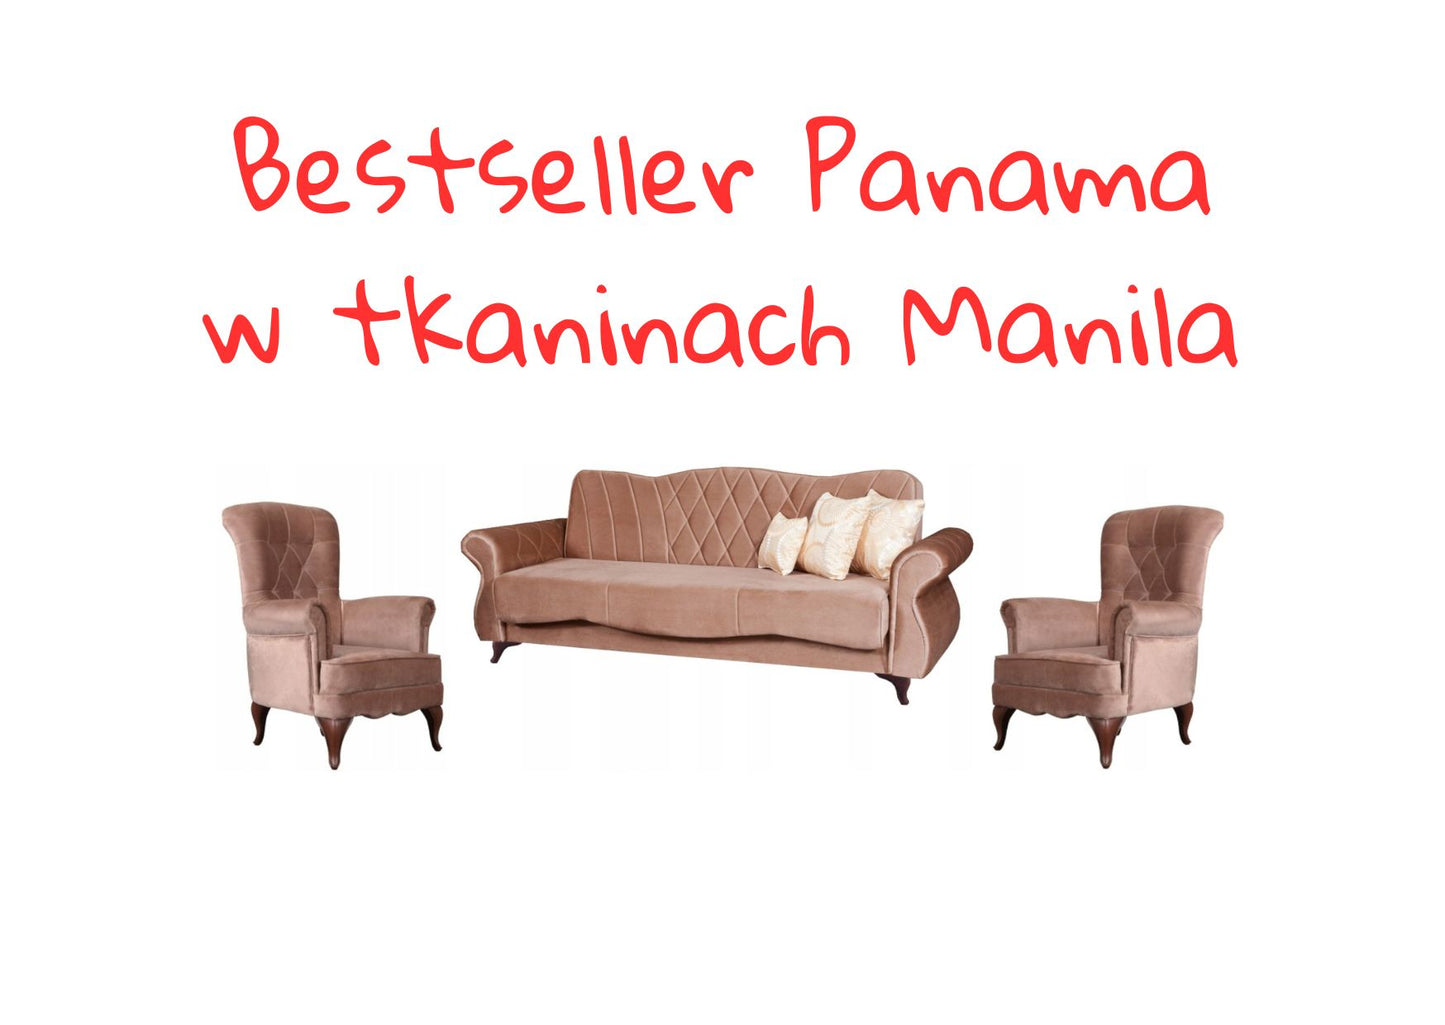 Zestaw wypoczynkowy Glamour 3+1+1 Wersalka + 2 fotele - Manila